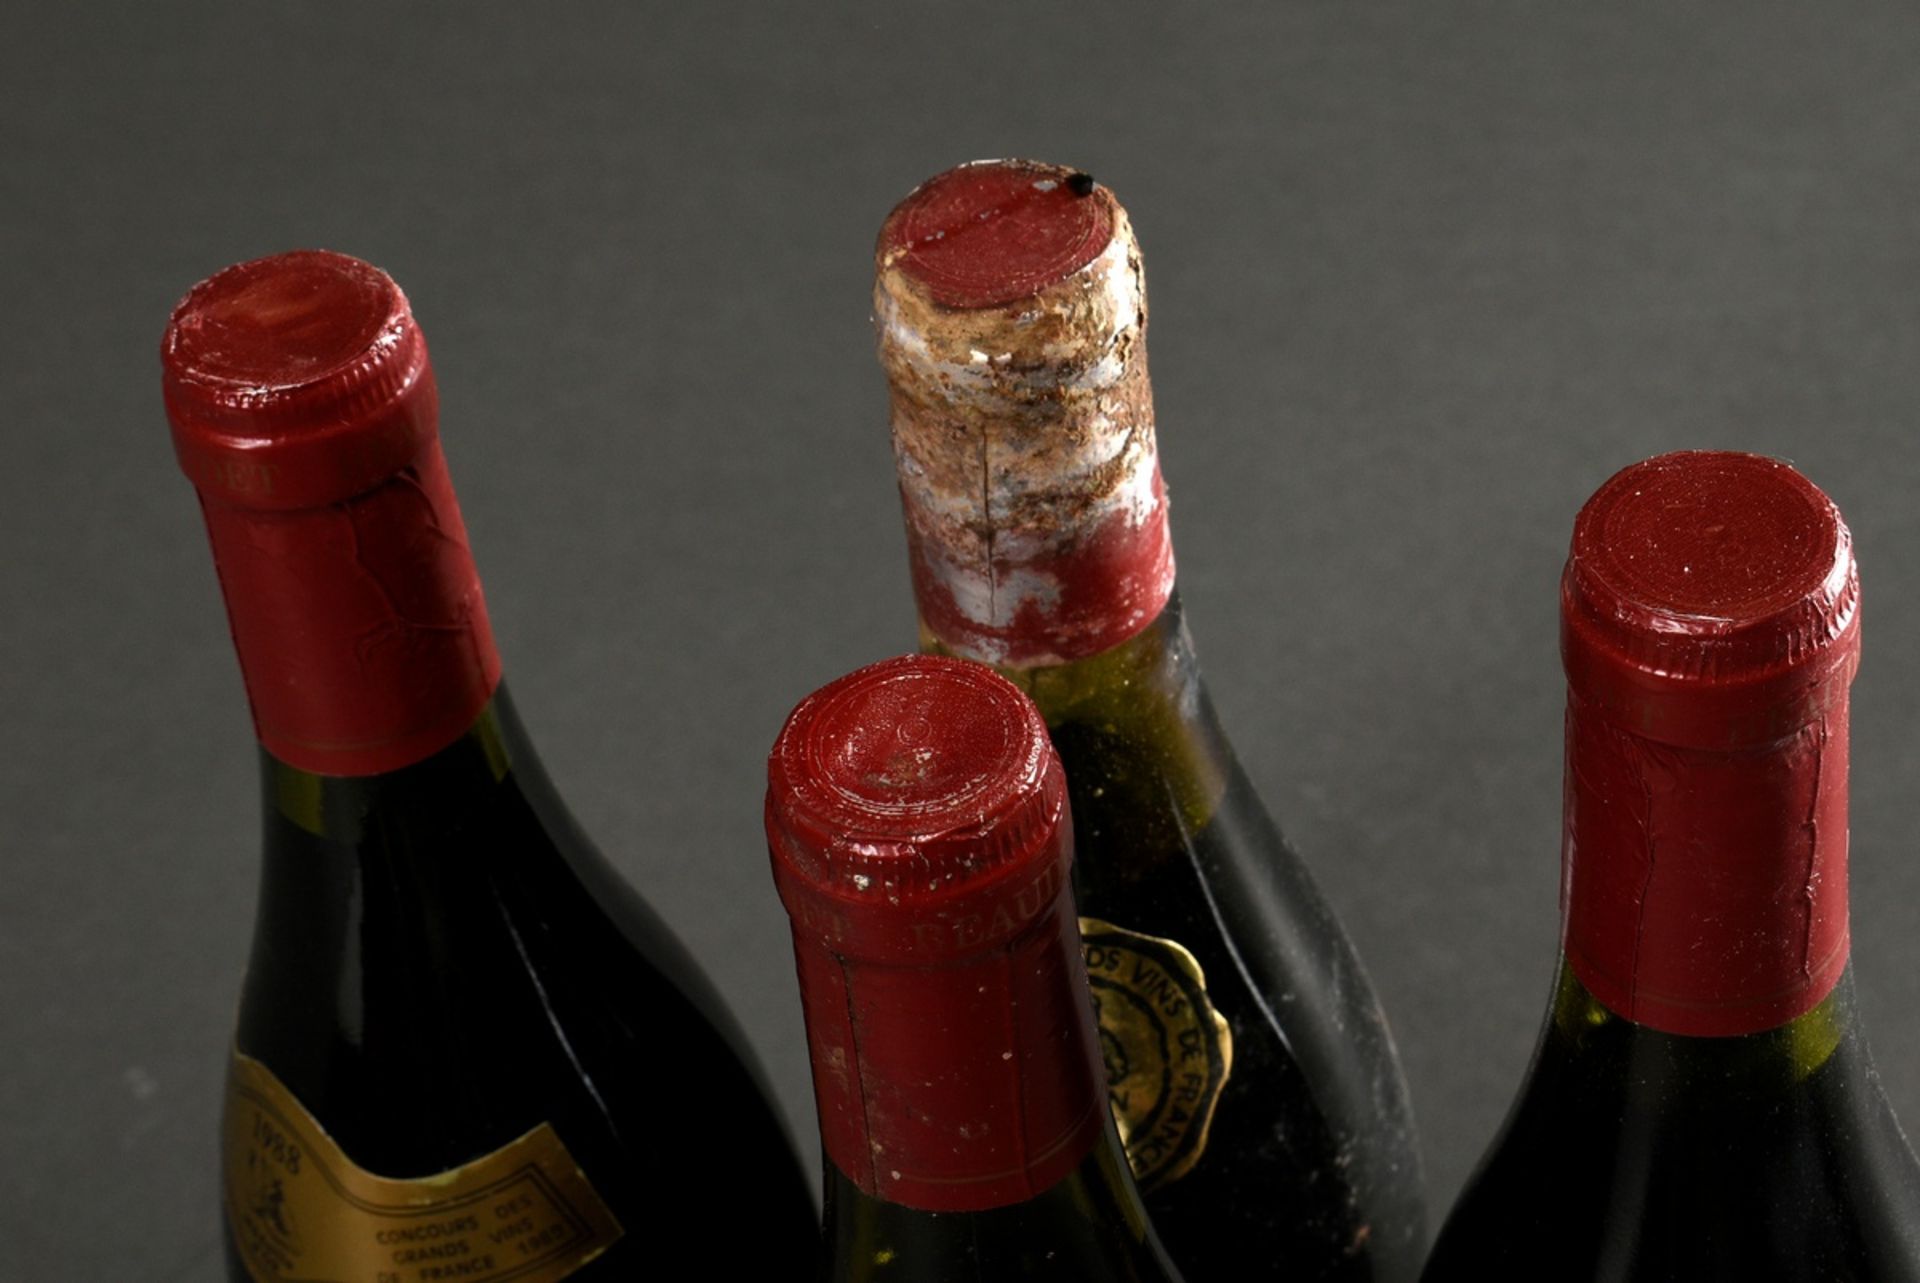 4 Bottles: 2x 1988 Cote de Brouilly and 2x 1988 Julienas, Paul Beaudet, Burgundy, France, 0.75l, la - Image 7 of 7